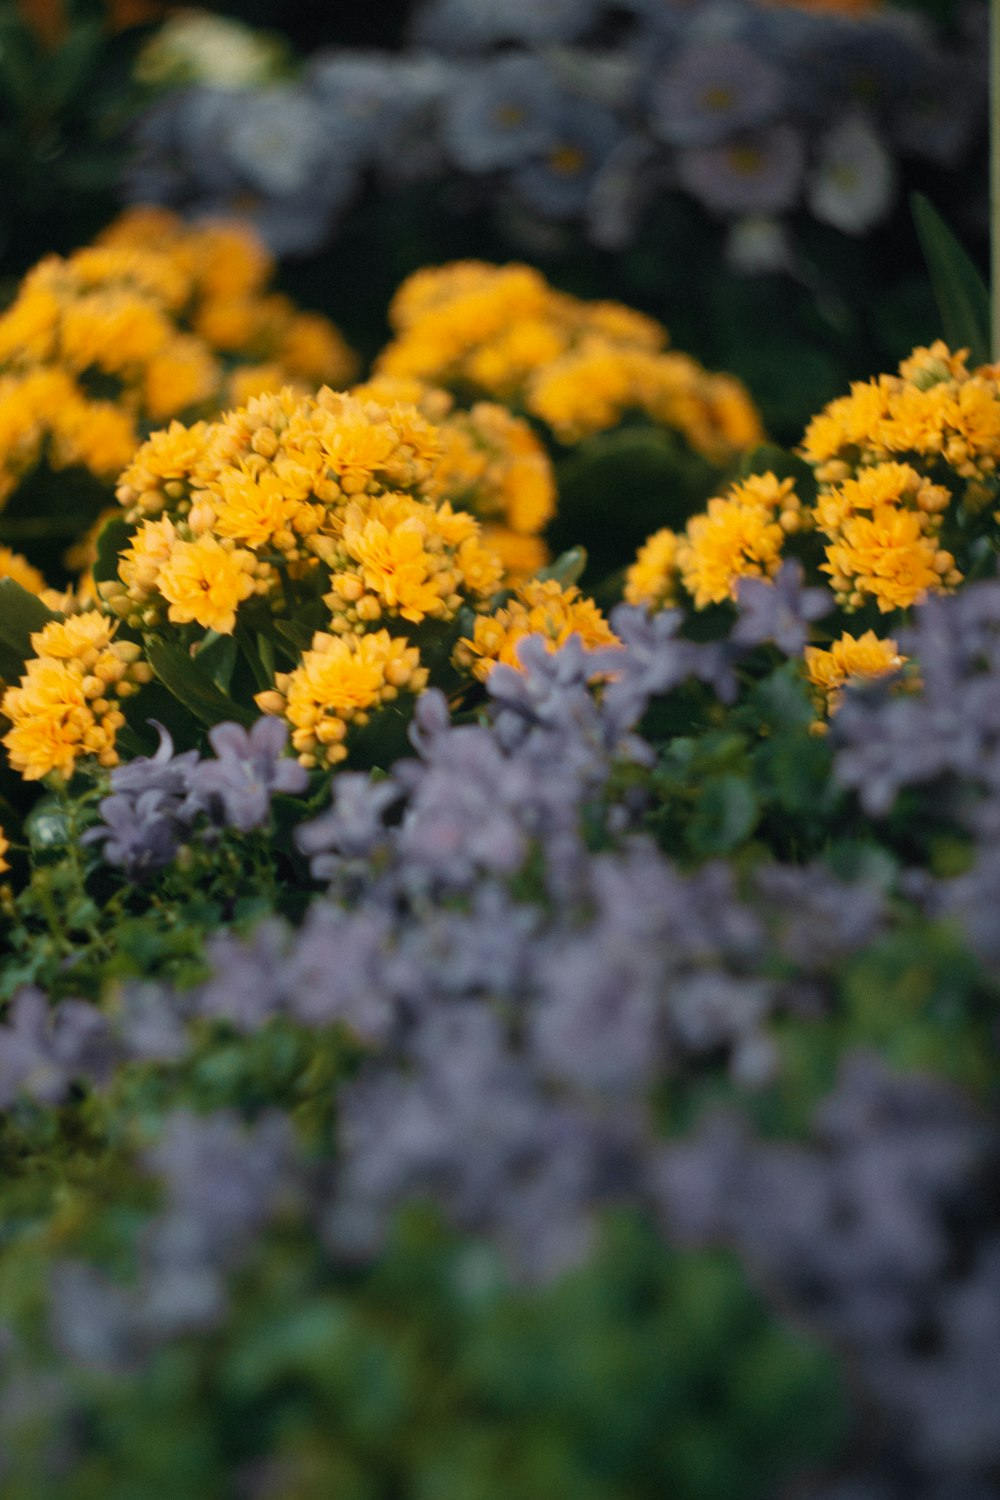 Un ramo de flores amarillas y moradas en un jardín